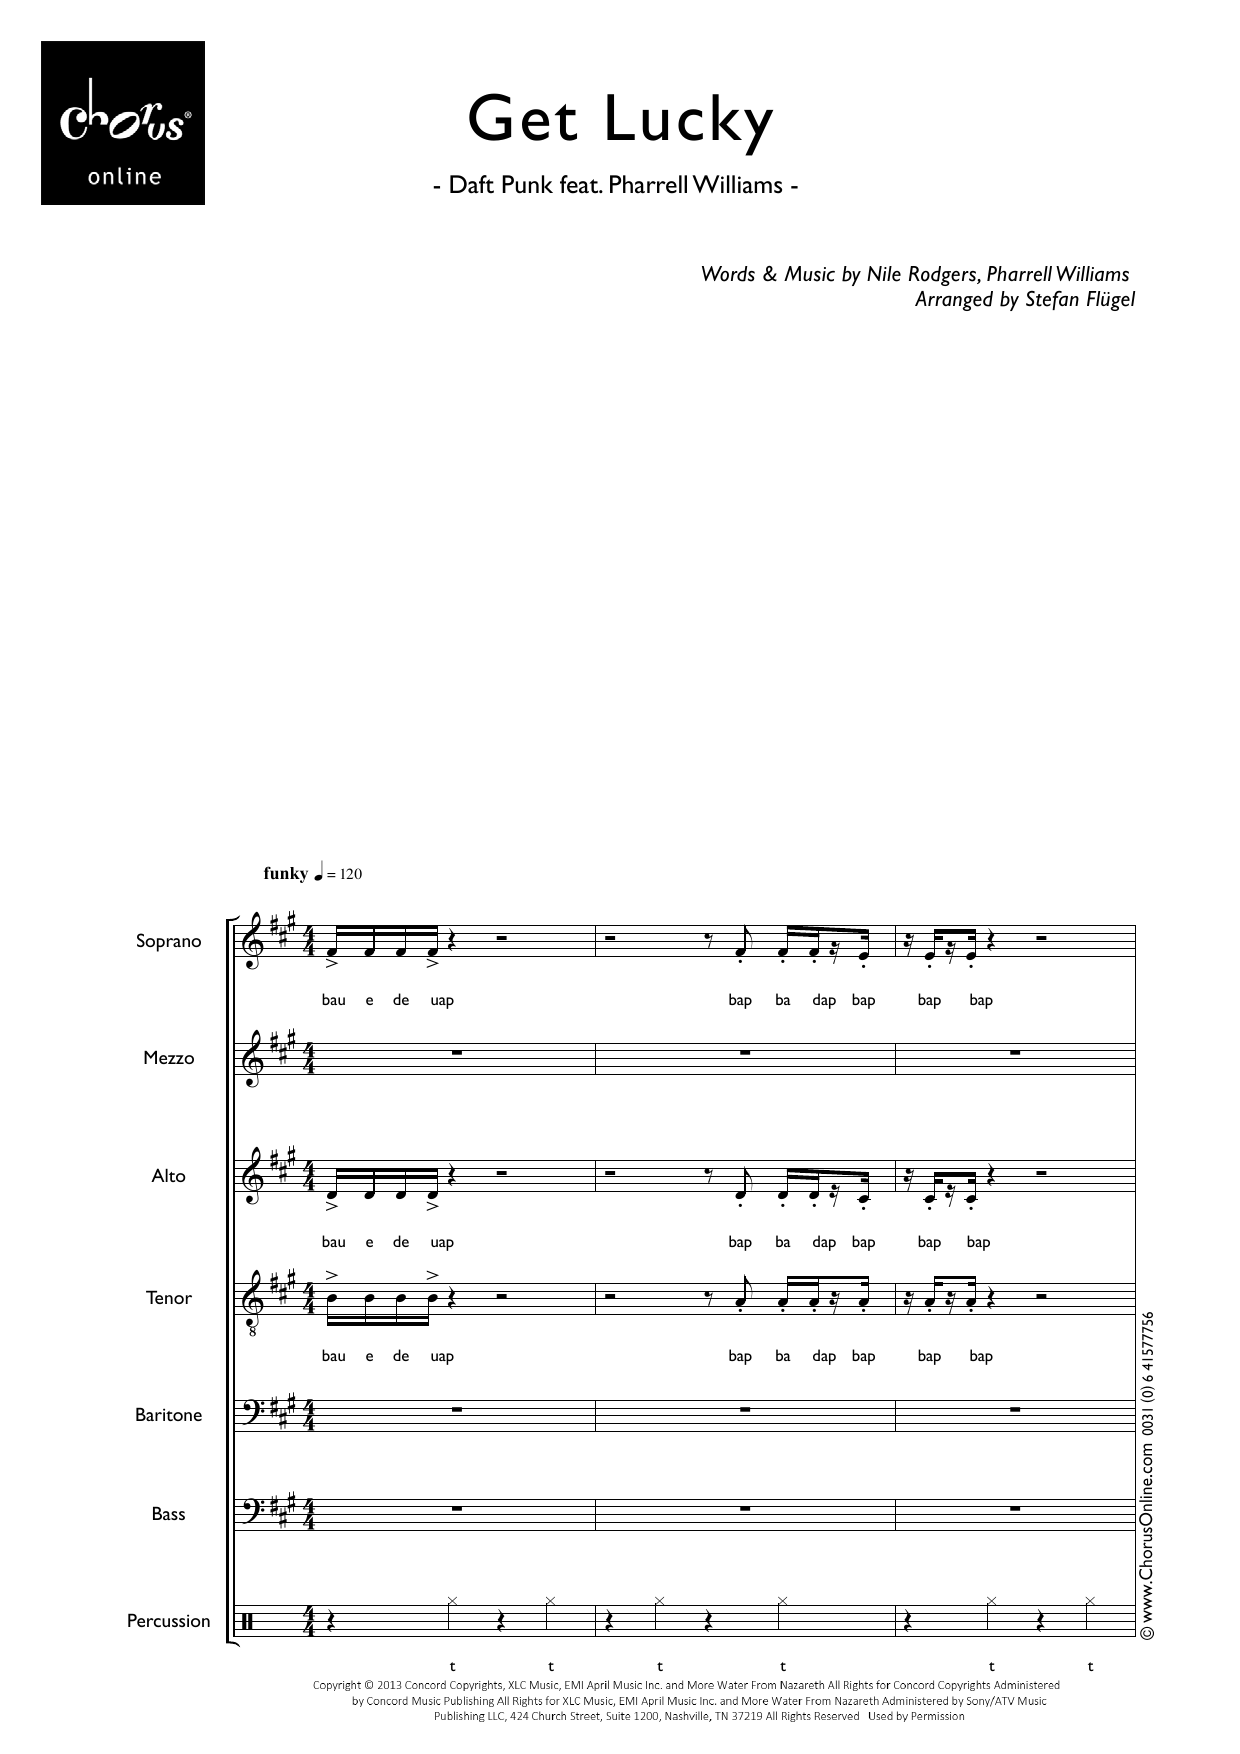 Daft Punk feat. Pharrell Williams Get Lucky (arr. Stefan Flügel) sheet music notes printable PDF score